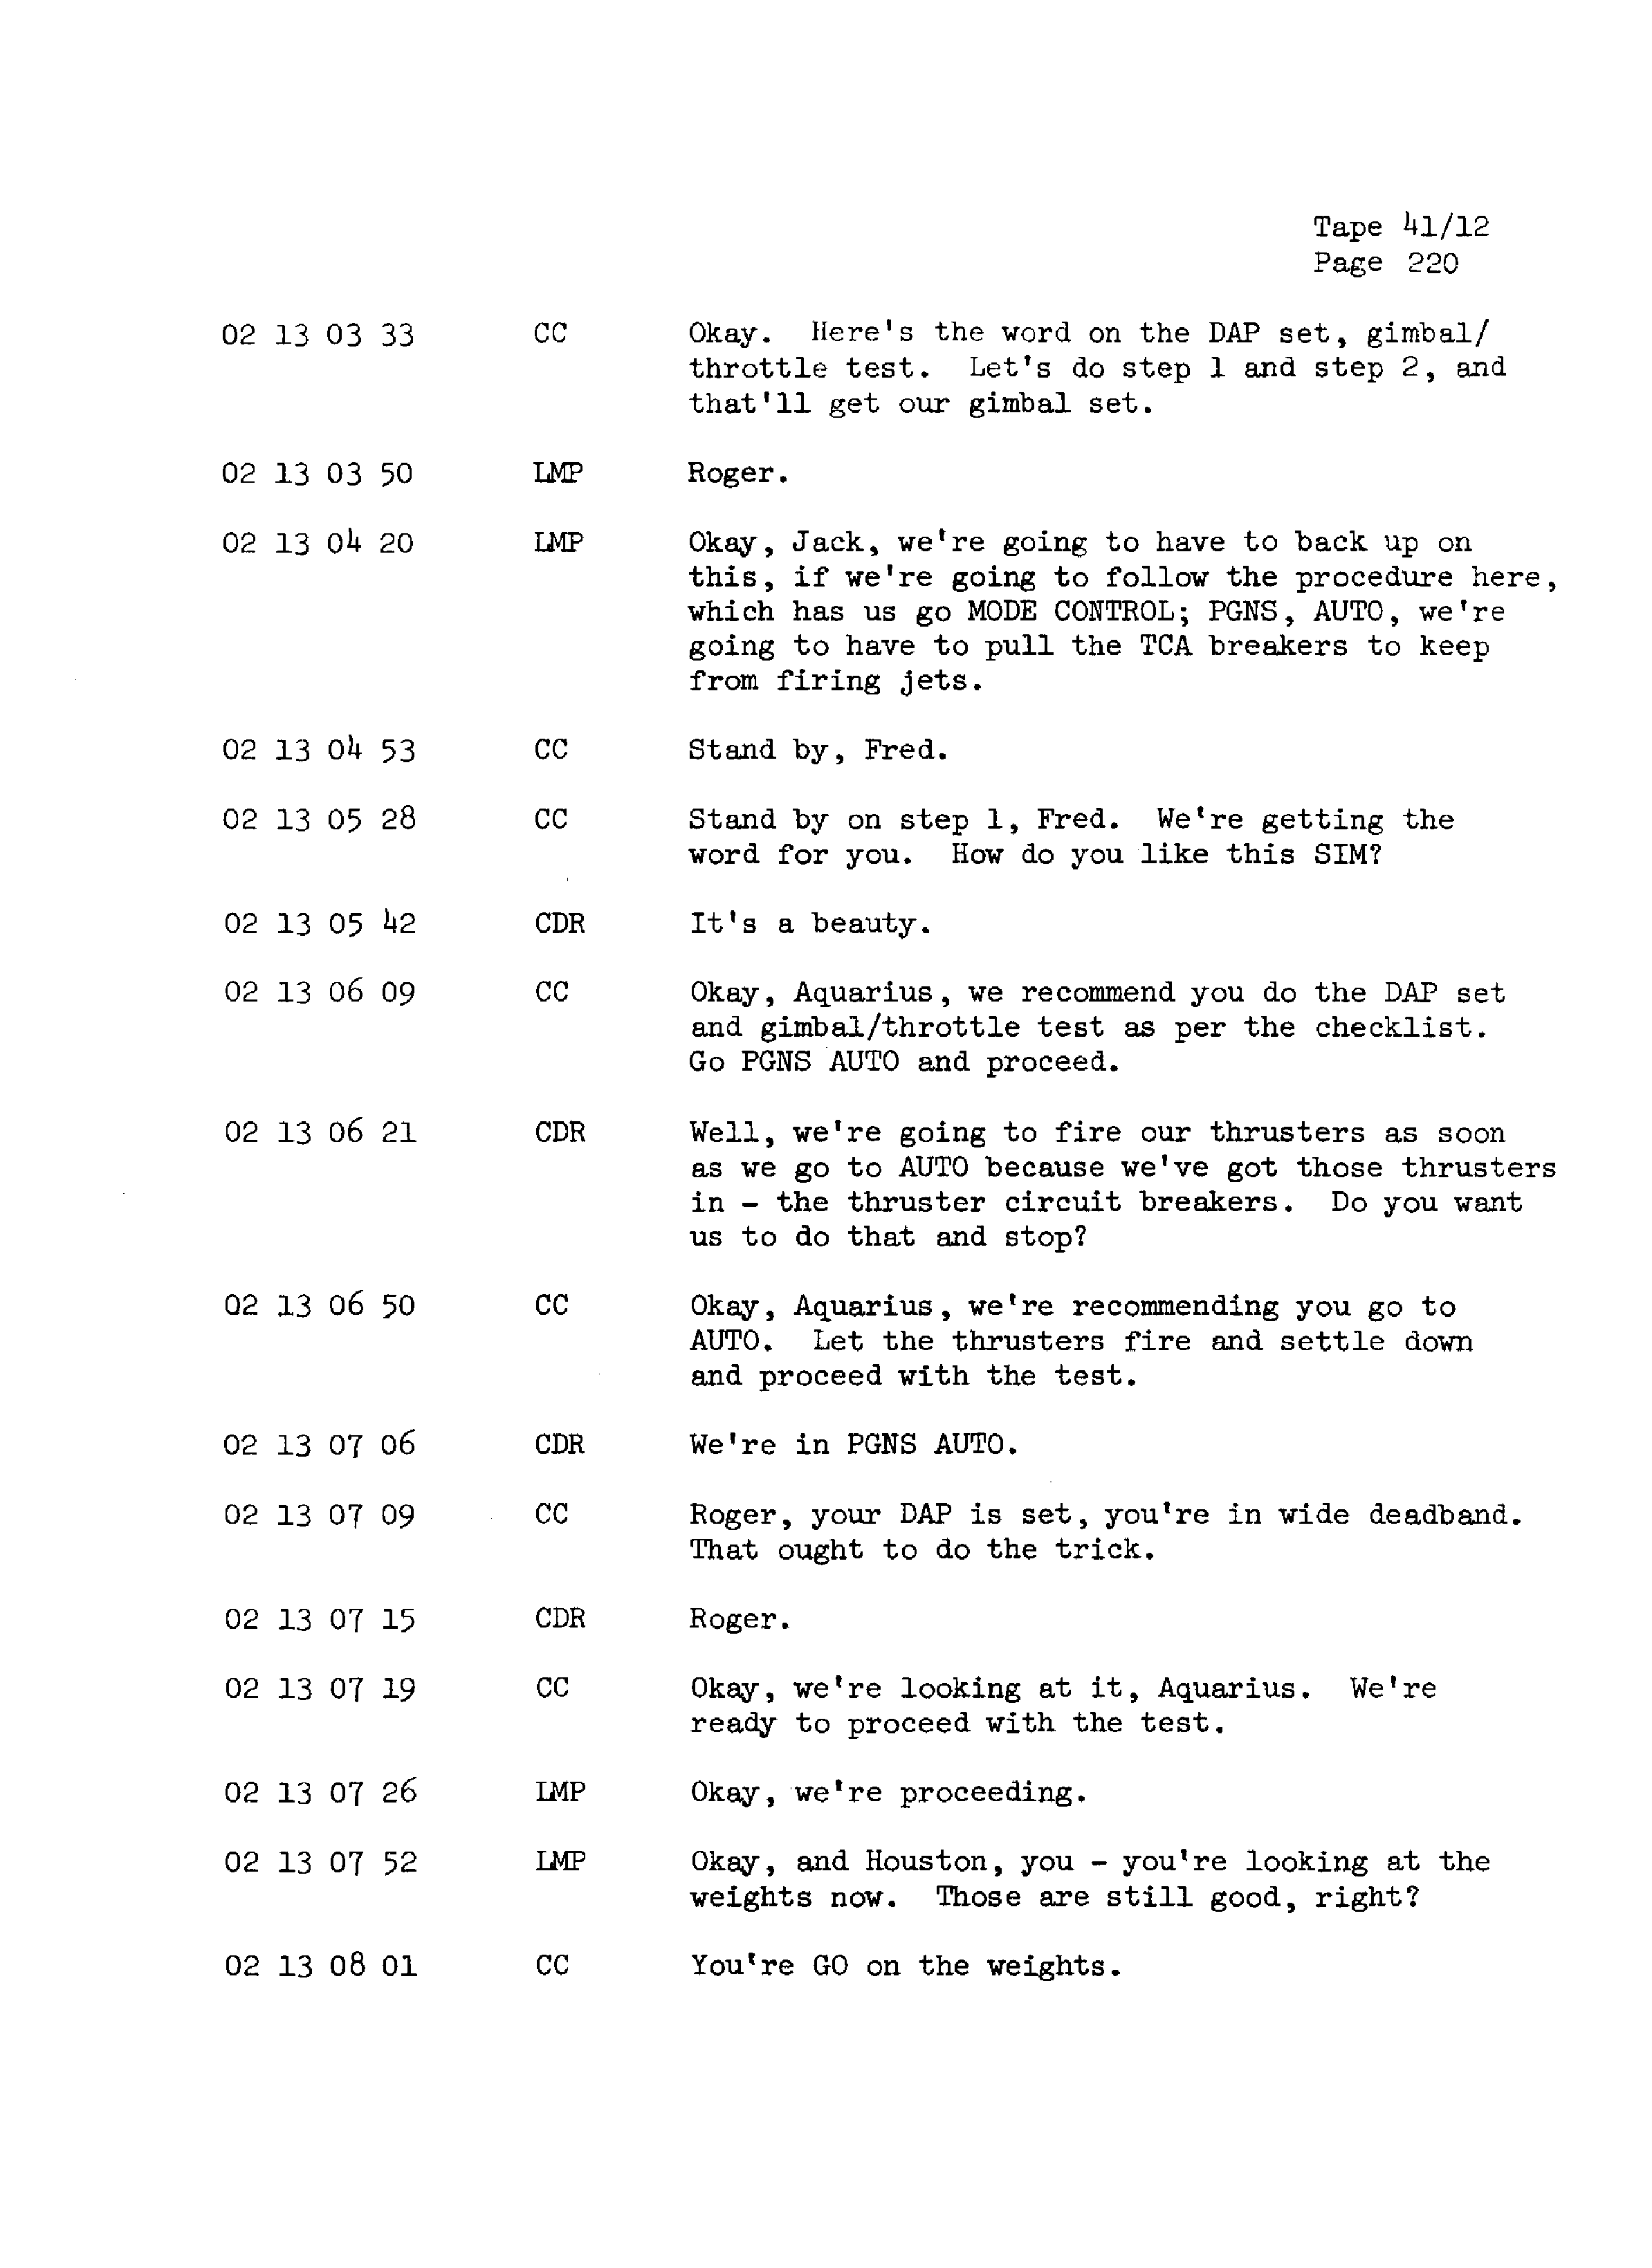 Page 227 of Apollo 13’s original transcript